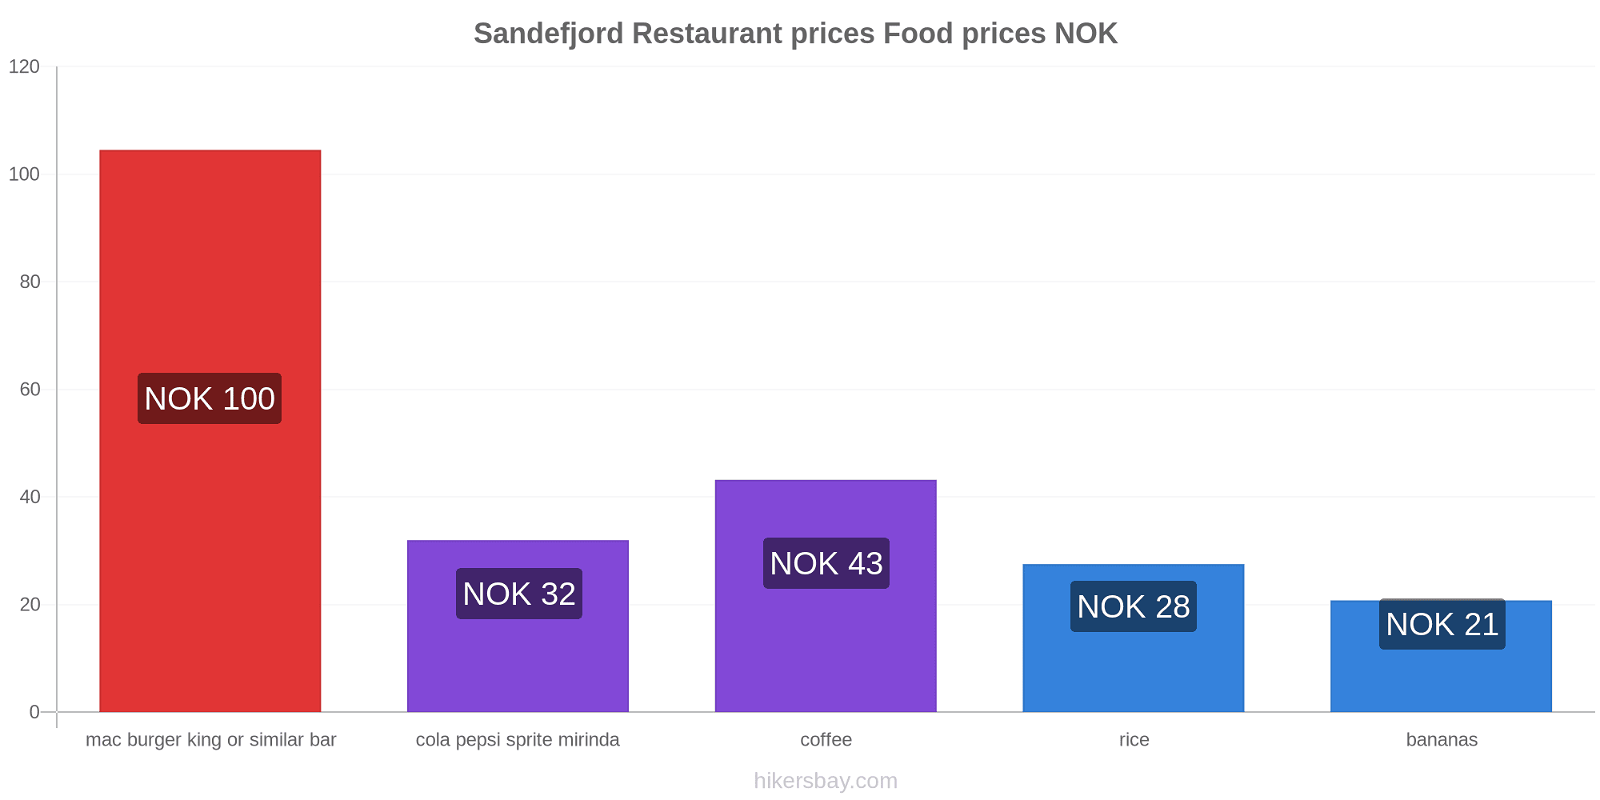 Sandefjord price changes hikersbay.com